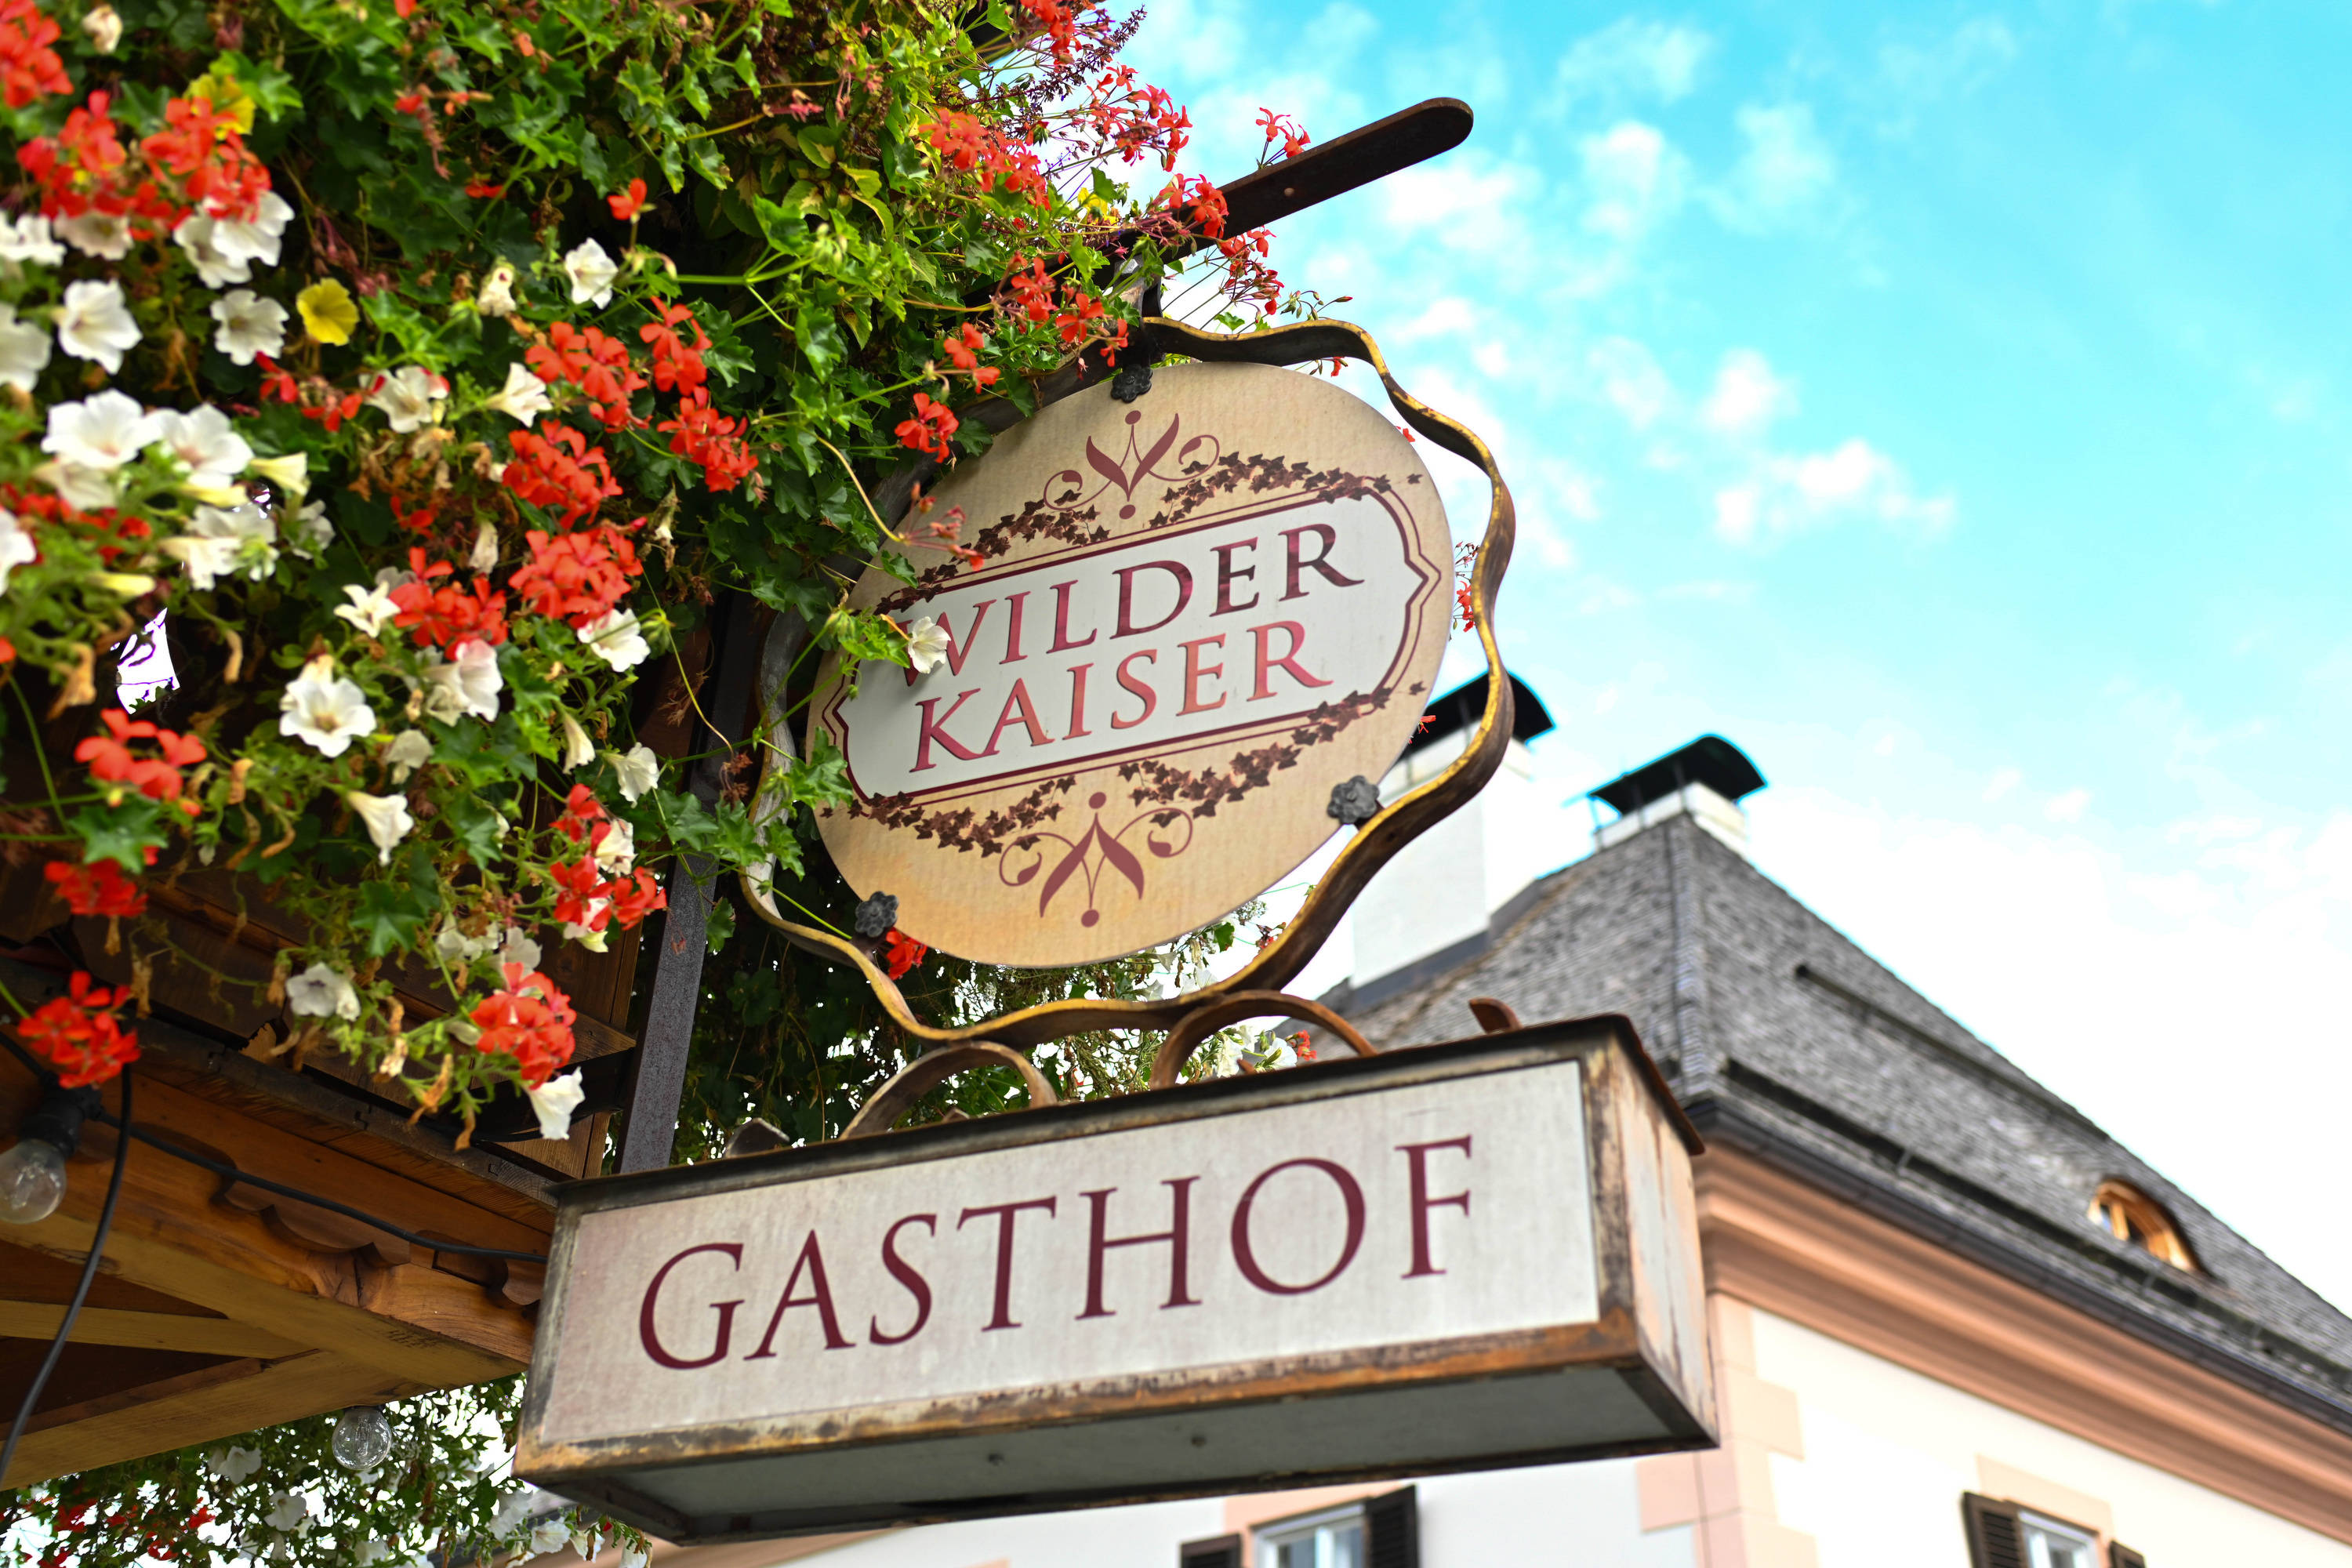 Gasthof Wilder Kaiser